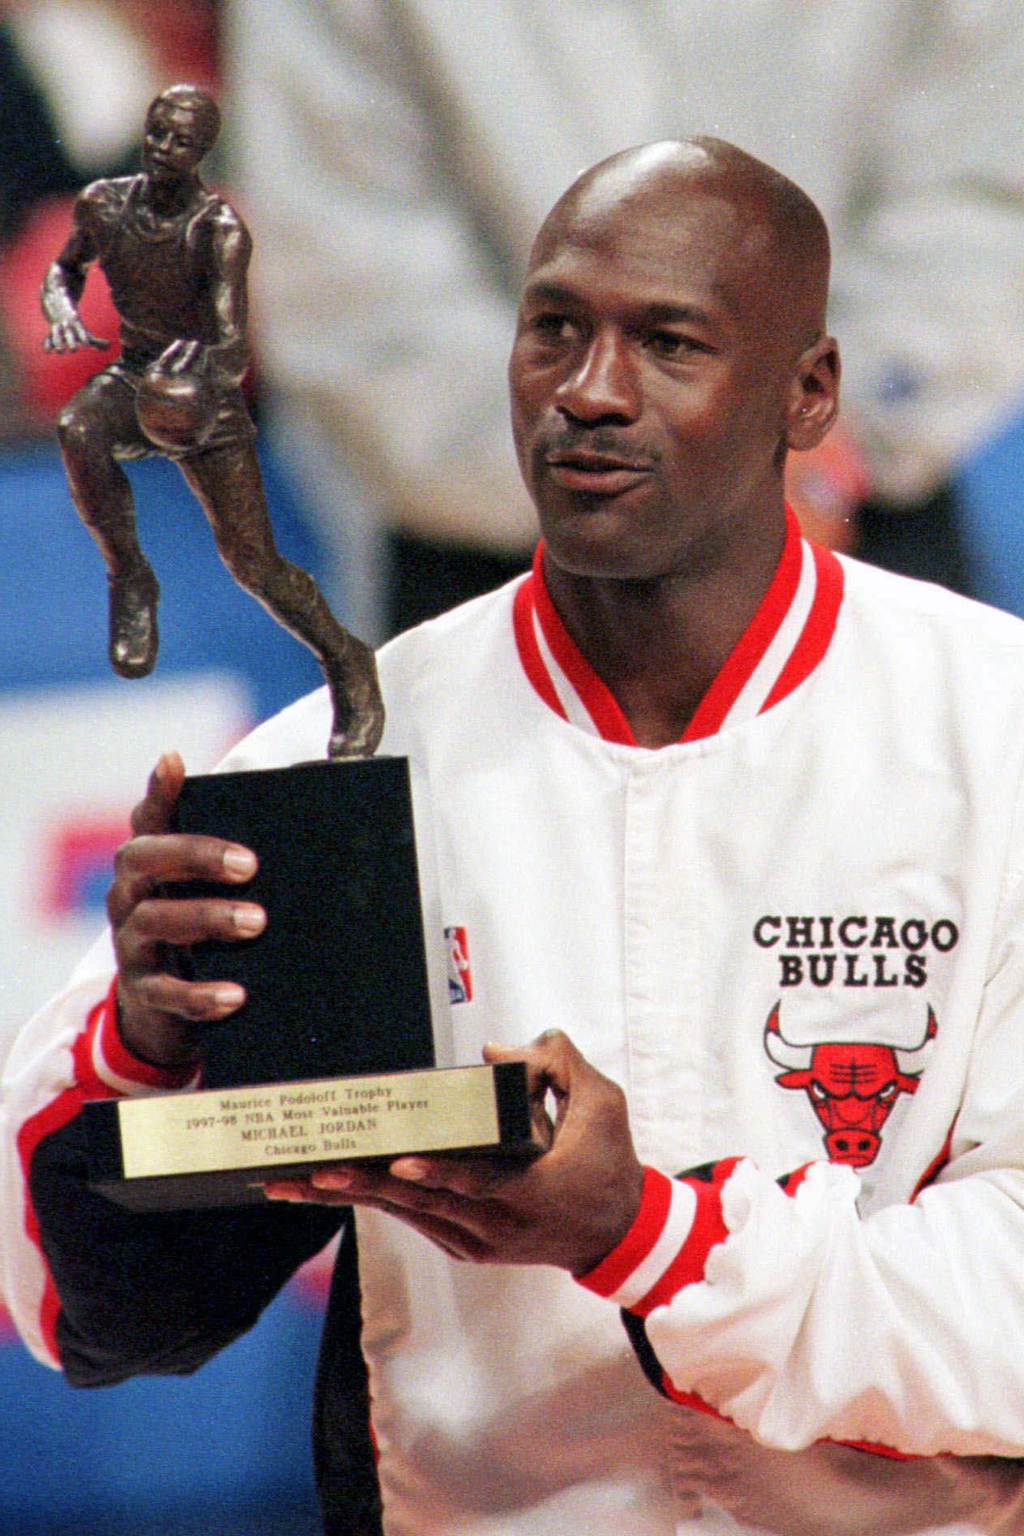 Al finalizar ese año, Michael Jordan anunció su retiro definitivo de las duelas para concluir su mítica carrera.